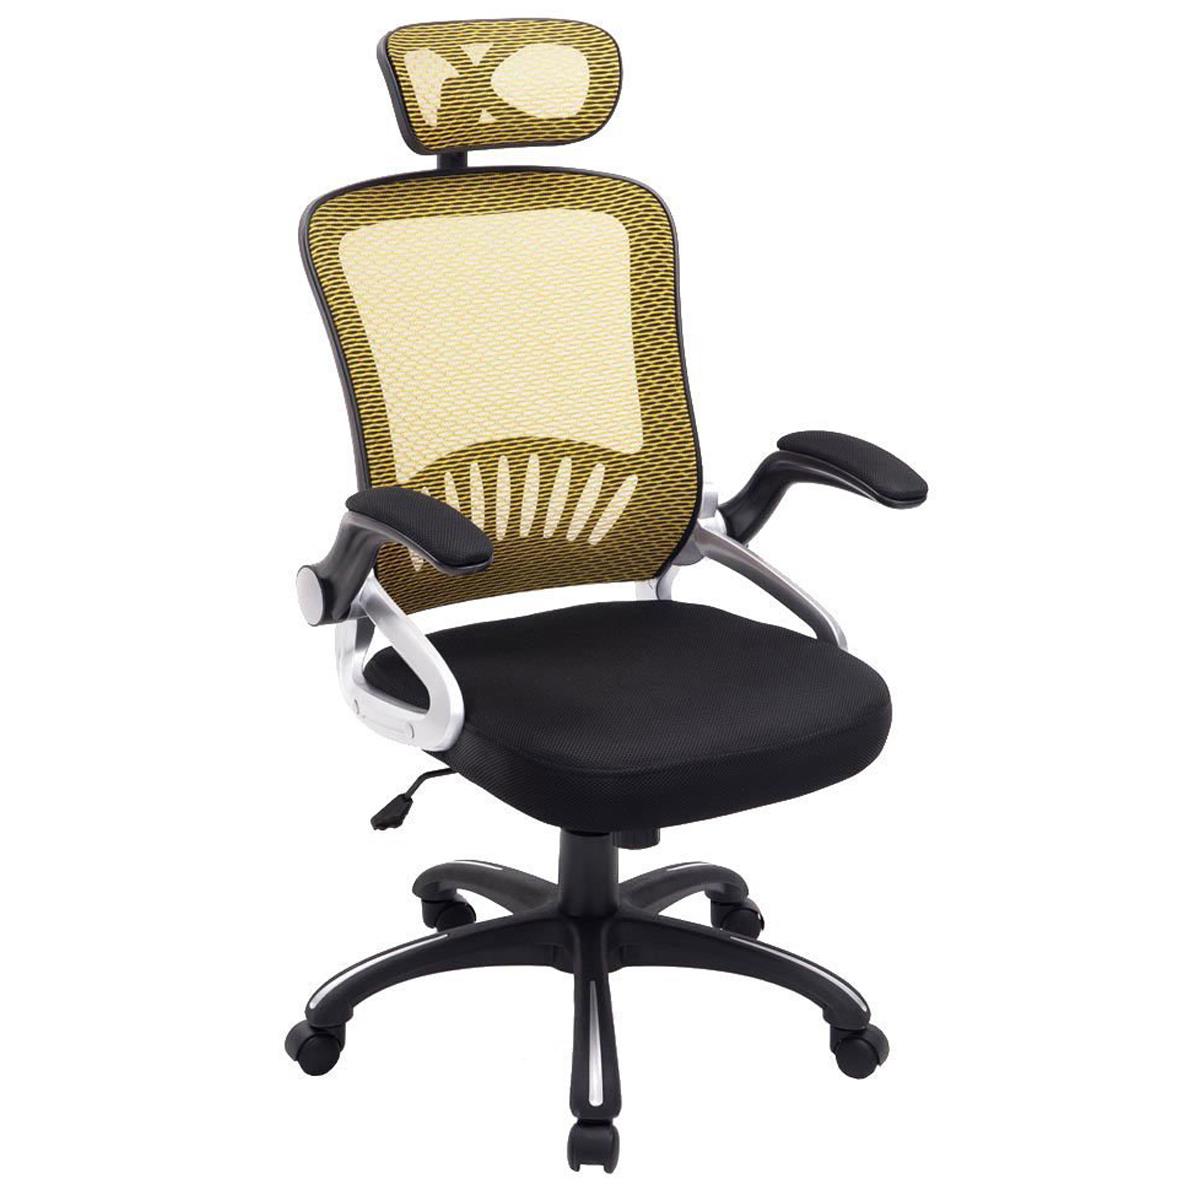 Cadeira Ergonômica SAMANA, Suporte Lombar, Cabeceira Regulável em Malha Transpirável, cor Amarelo/Preto